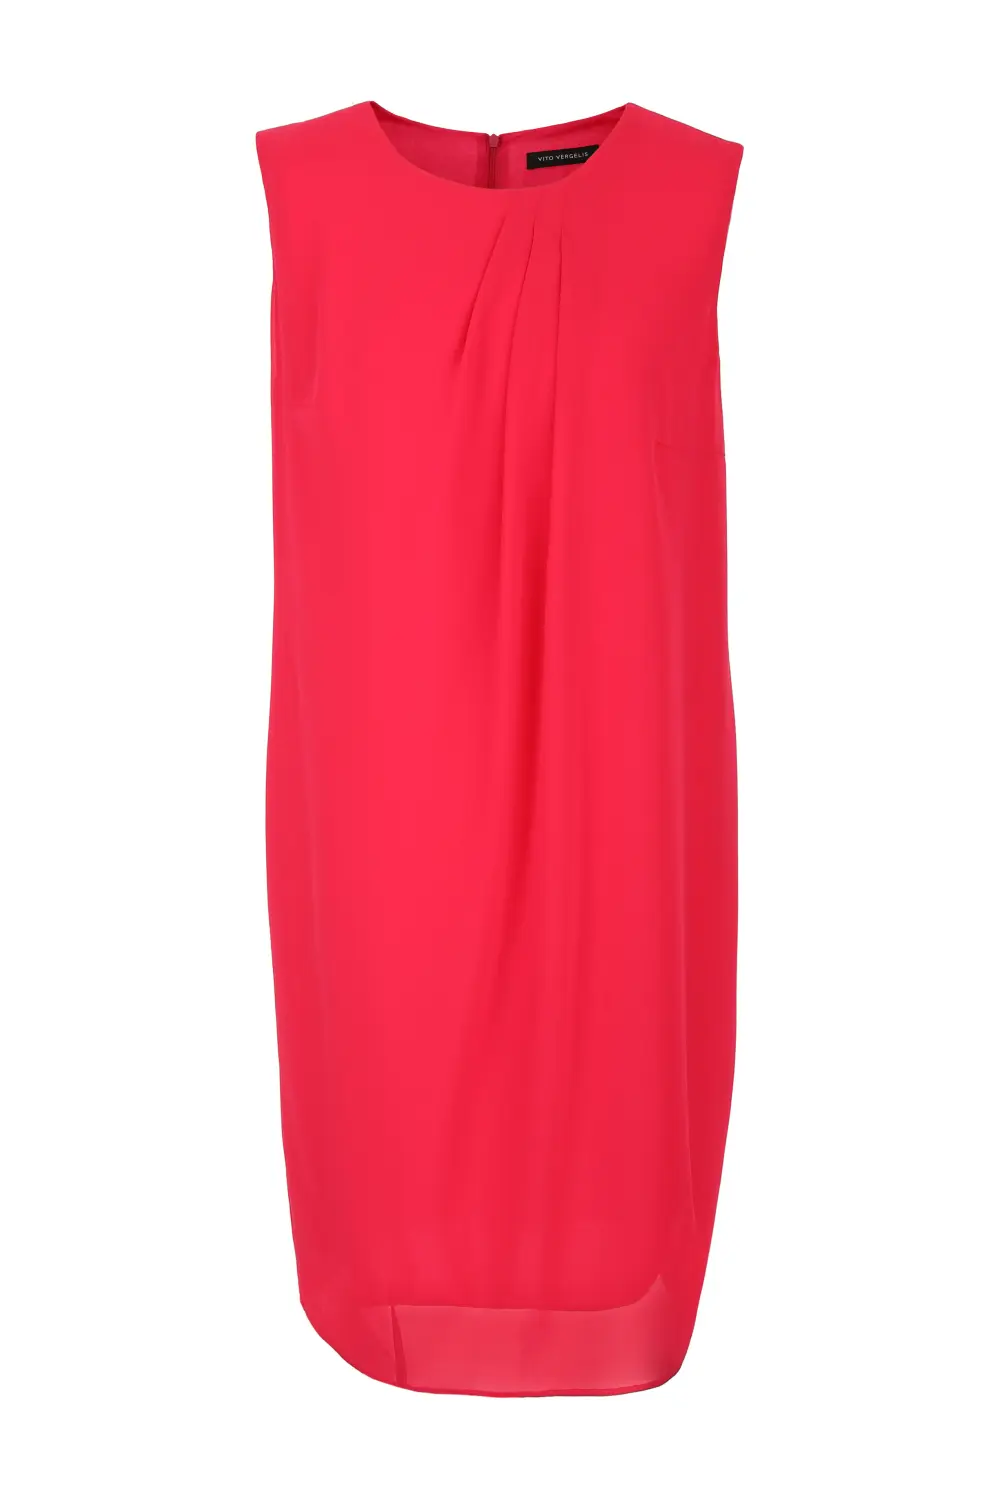 Czerwona sukienka szyfonowa bez rękawów - Kolekcja wizytowa. Sukienka plus size Vito Vergelis.